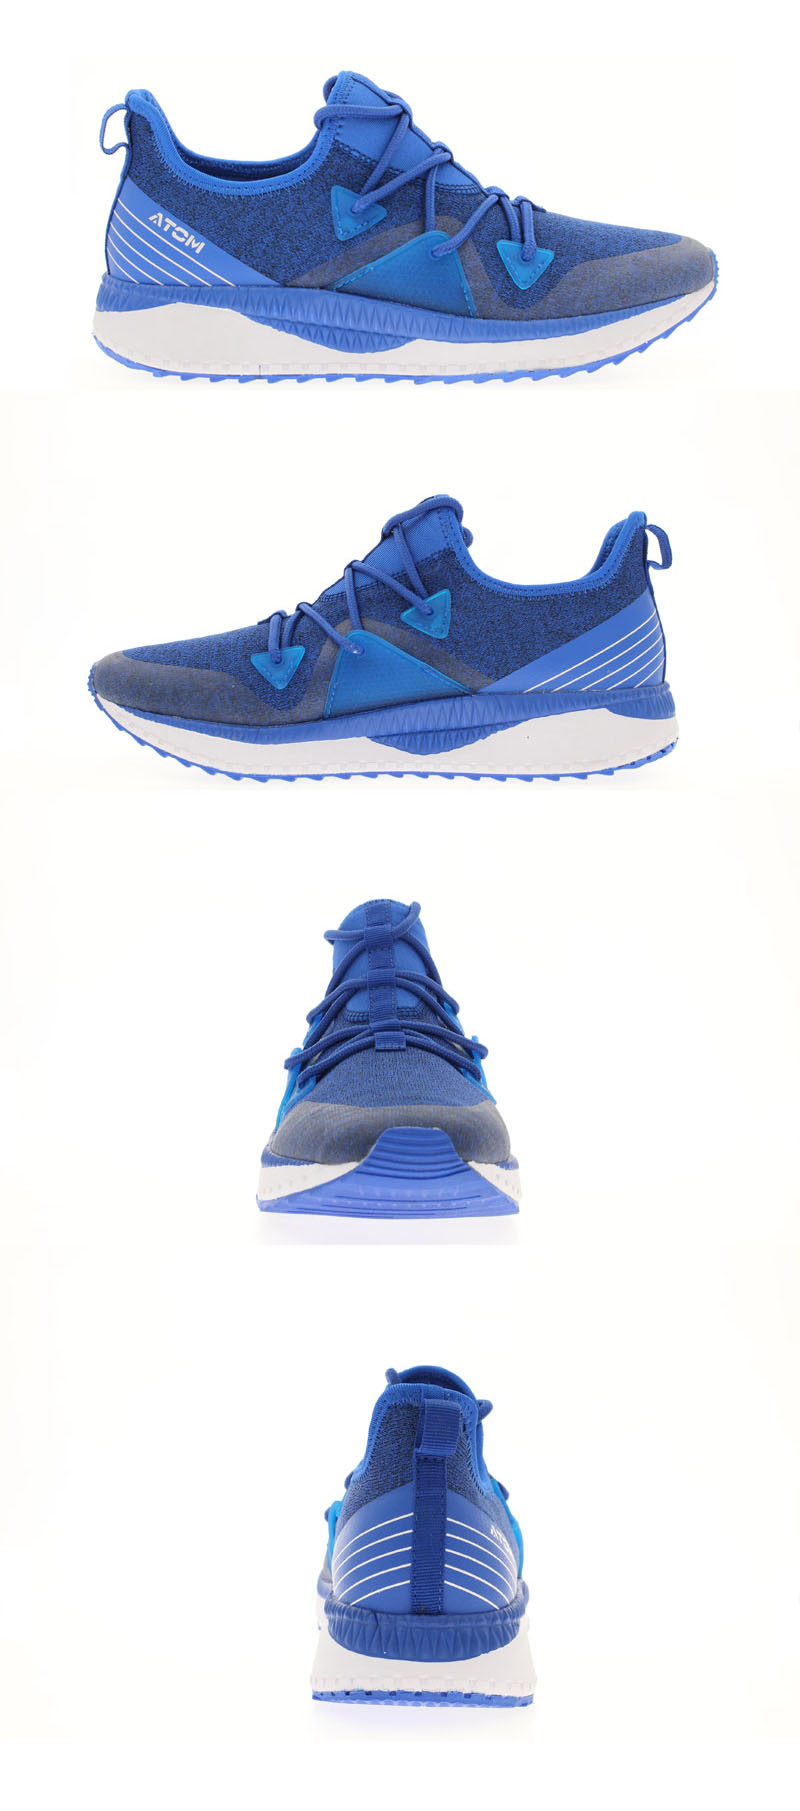 Mix royal blue color shoes